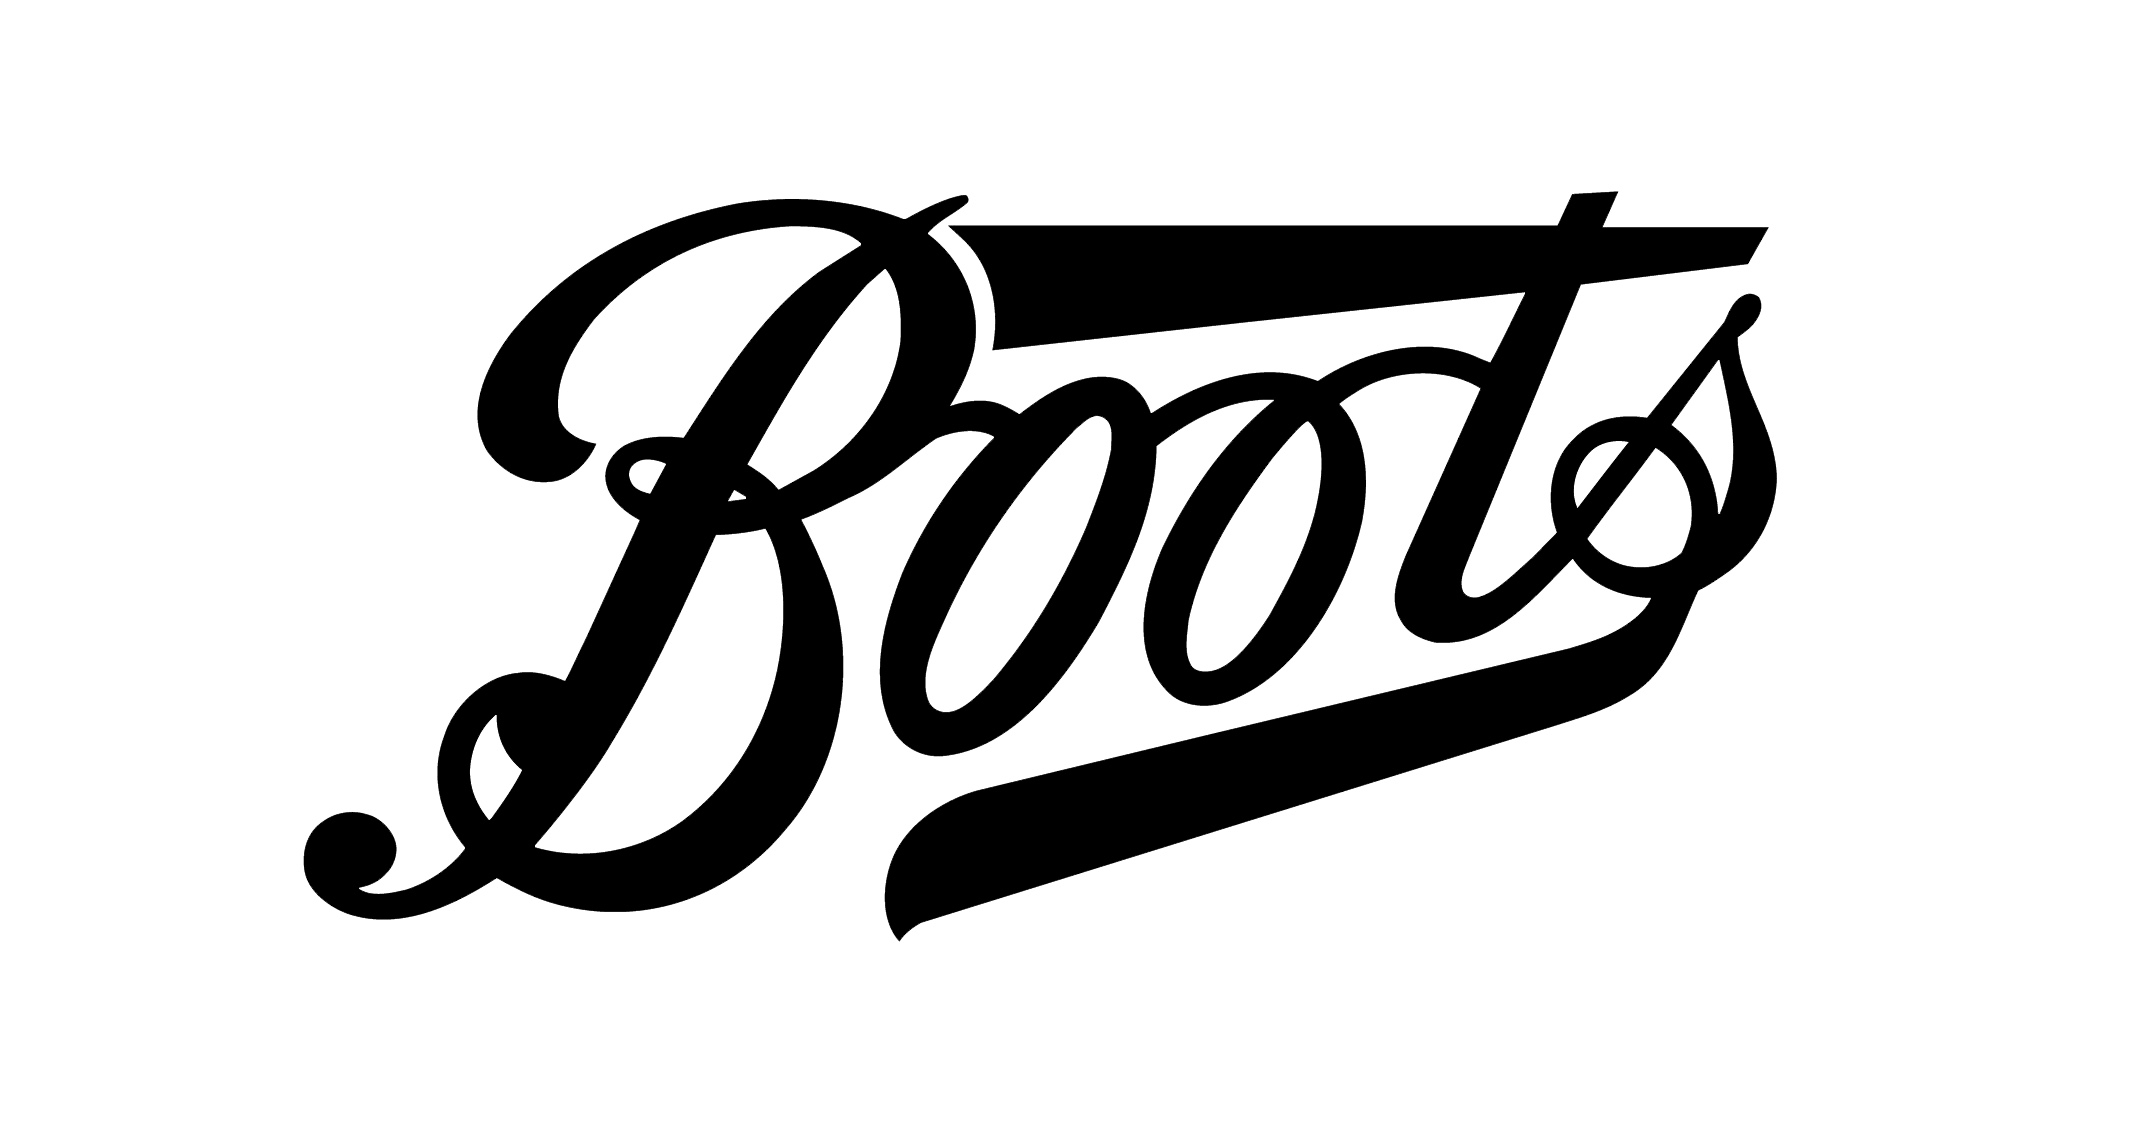 Transparent Boots Logo | vlr.eng.br